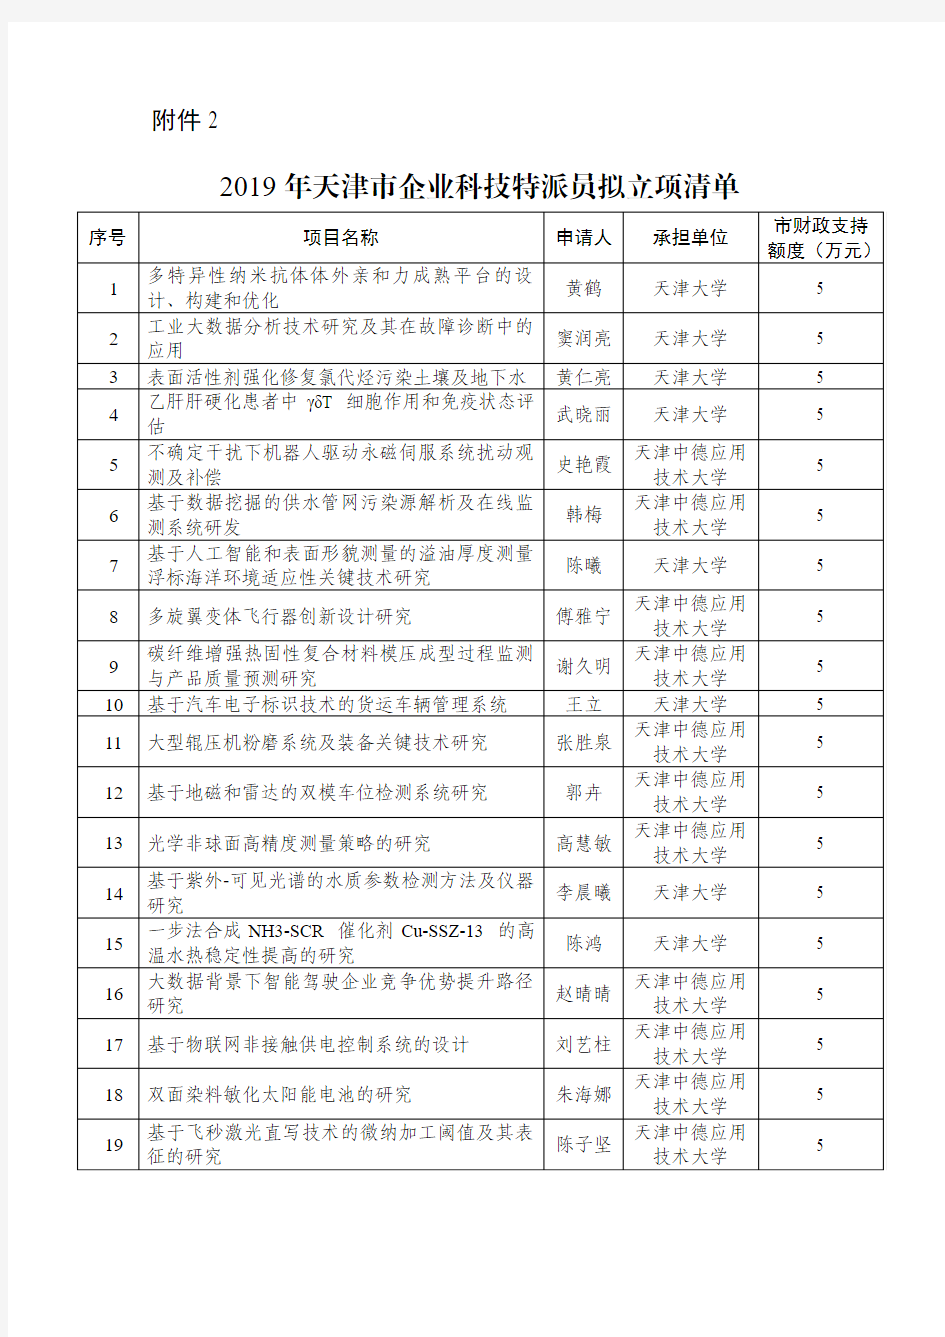 2019年天津市企业科技特派员拟立项清单